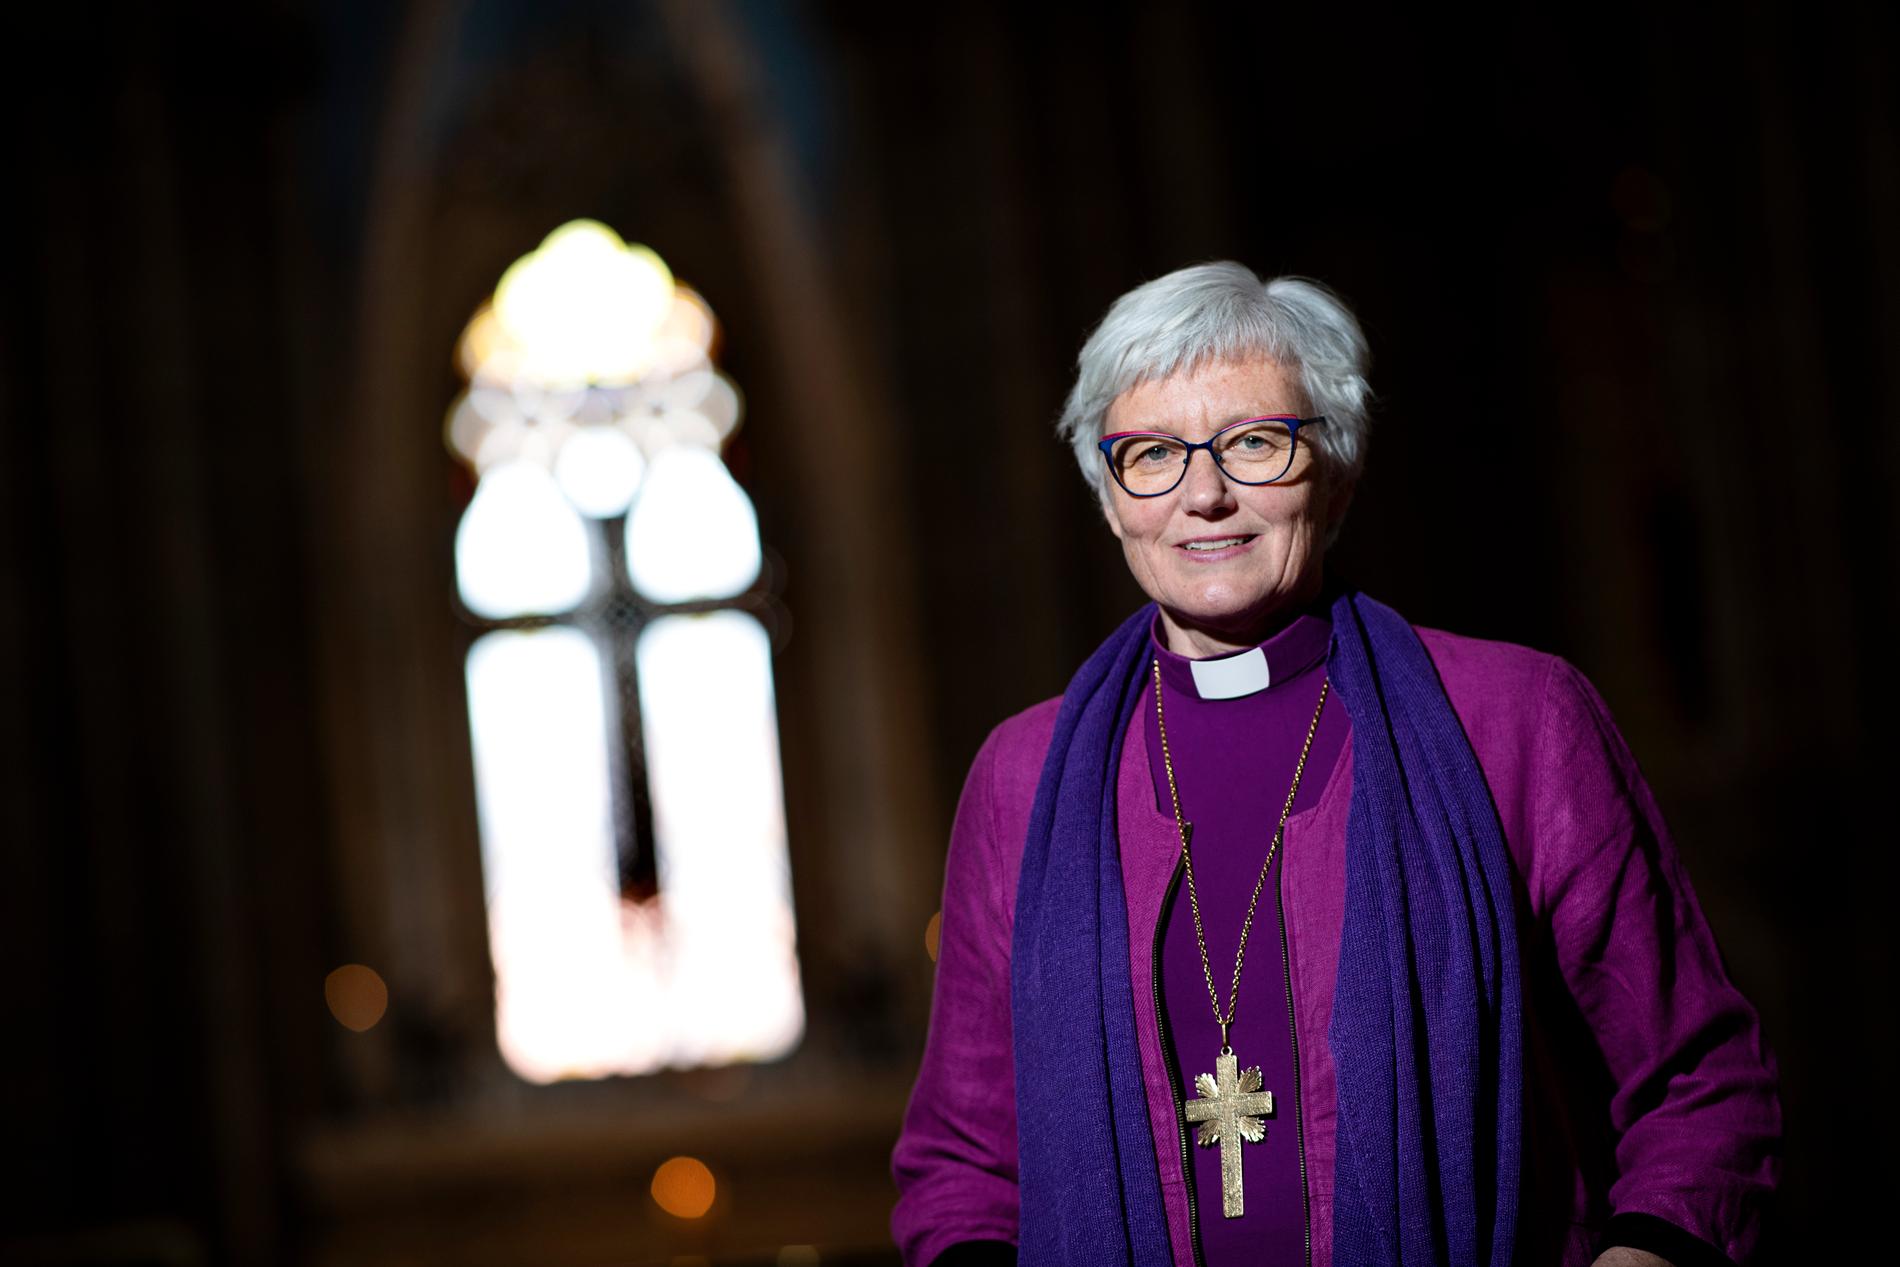 Ärkebiskop Antje Jackelén går i pension i höst. Nu ska hennes efterträdare väljas. Arkivbild.